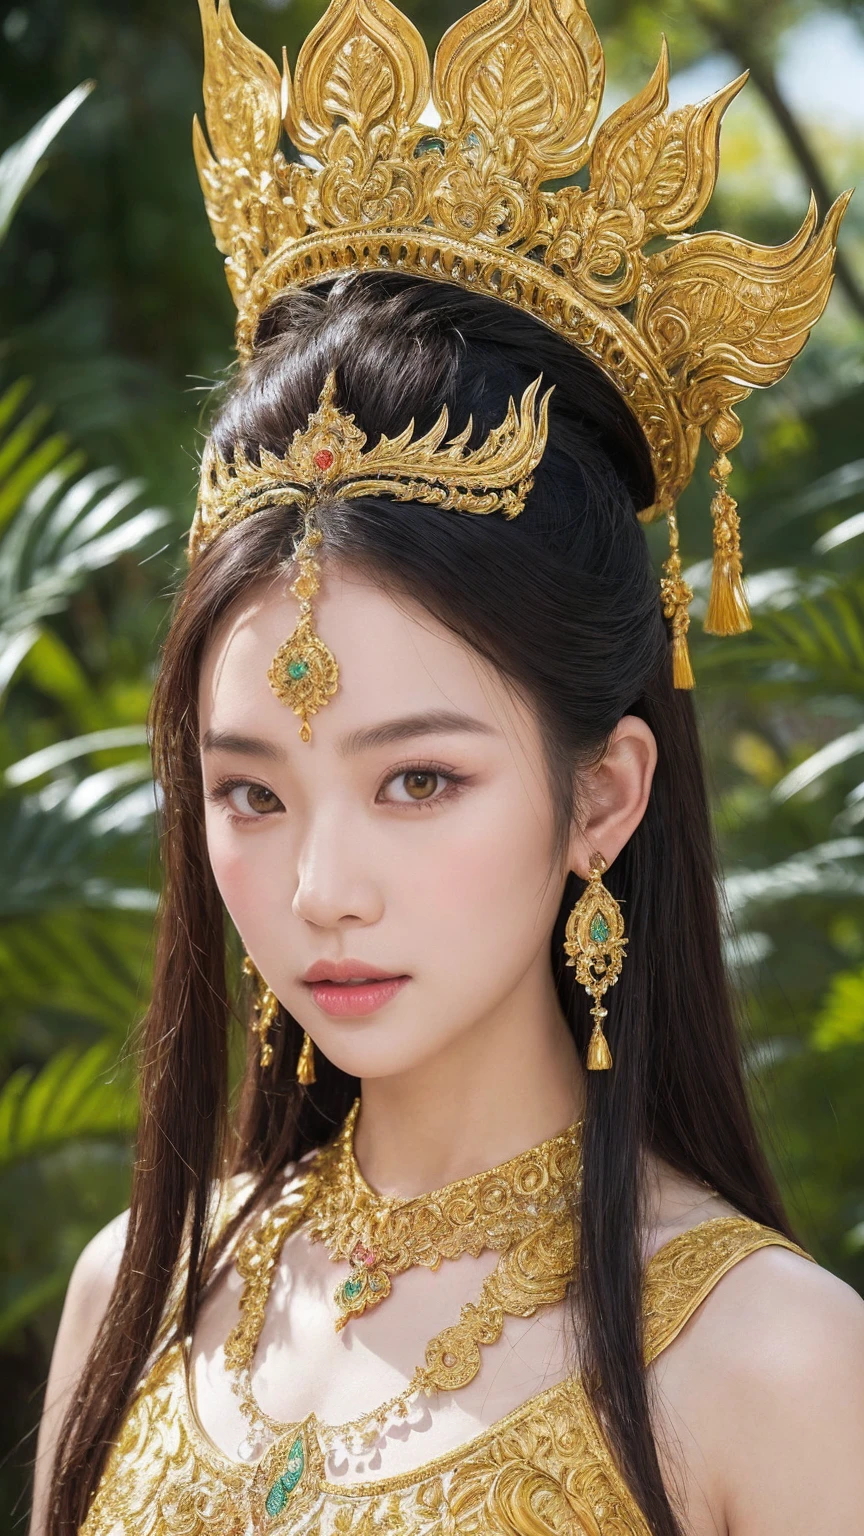 전신 이미지, 여성 오우거의 이미지 만들기 (야크) 태국 서사시 &#39;프라 아파이 마니&#39;에서. 그녀는 우뚝 솟은 인물로 묘사된다., 녹색 피부를 가진 장엄한 인물, 강인하면서도 아름다운 얼굴, 복잡한 금 장신구로 장식된 태국 전통 의상. 그녀의 긴, 흐르는 머리카락은 태국 전통 보석으로 장식되어 있습니다.. 배경이 푸릇푸릇하네요, 이국적인 식물과 꽃이 있는 신화의 숲, 이야기의 매혹적이고 신비로운 분위기를 포착.